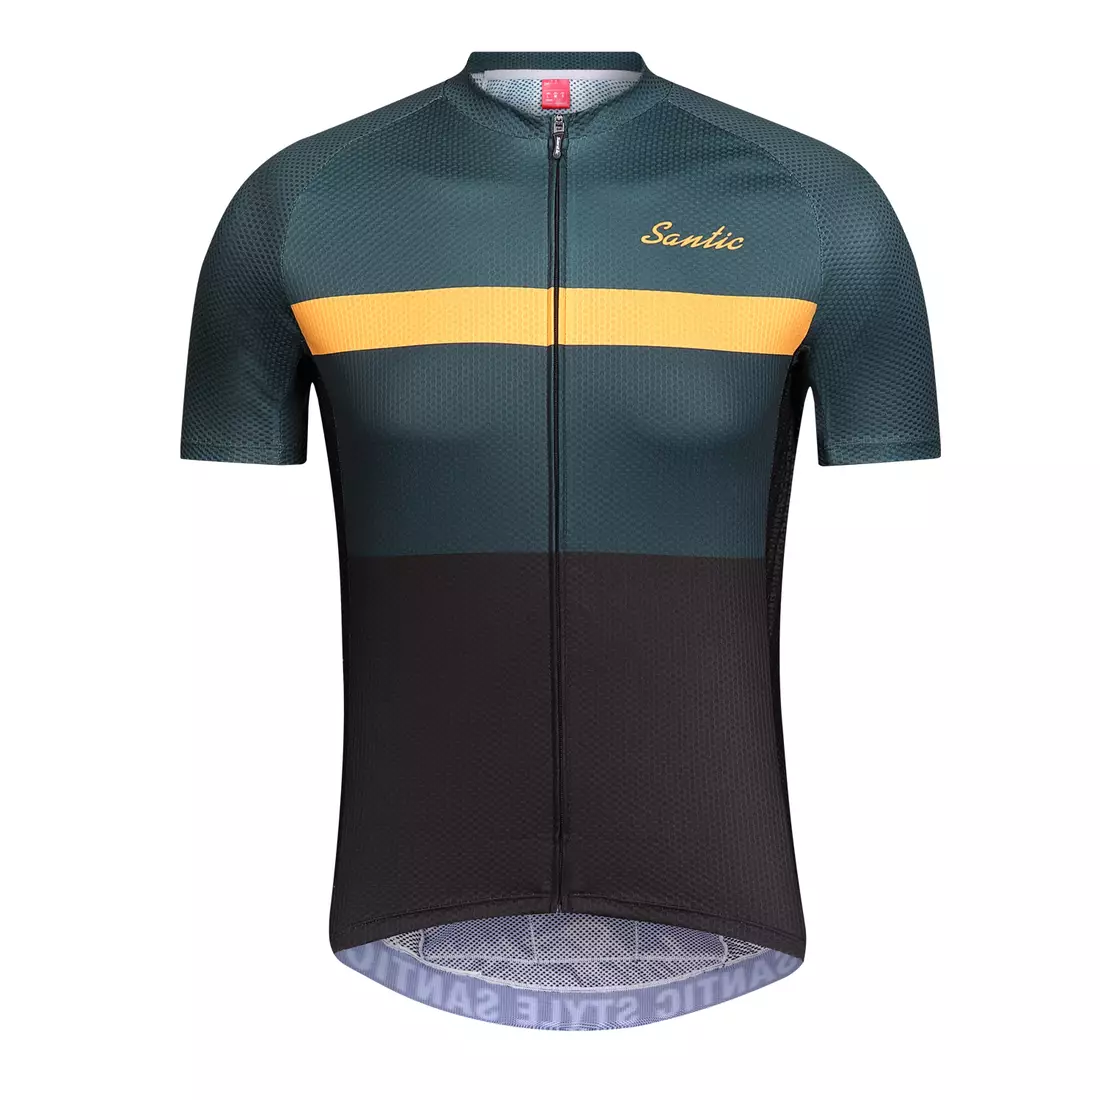 SANTIC QM9C02138V men's cycling jersey green and black